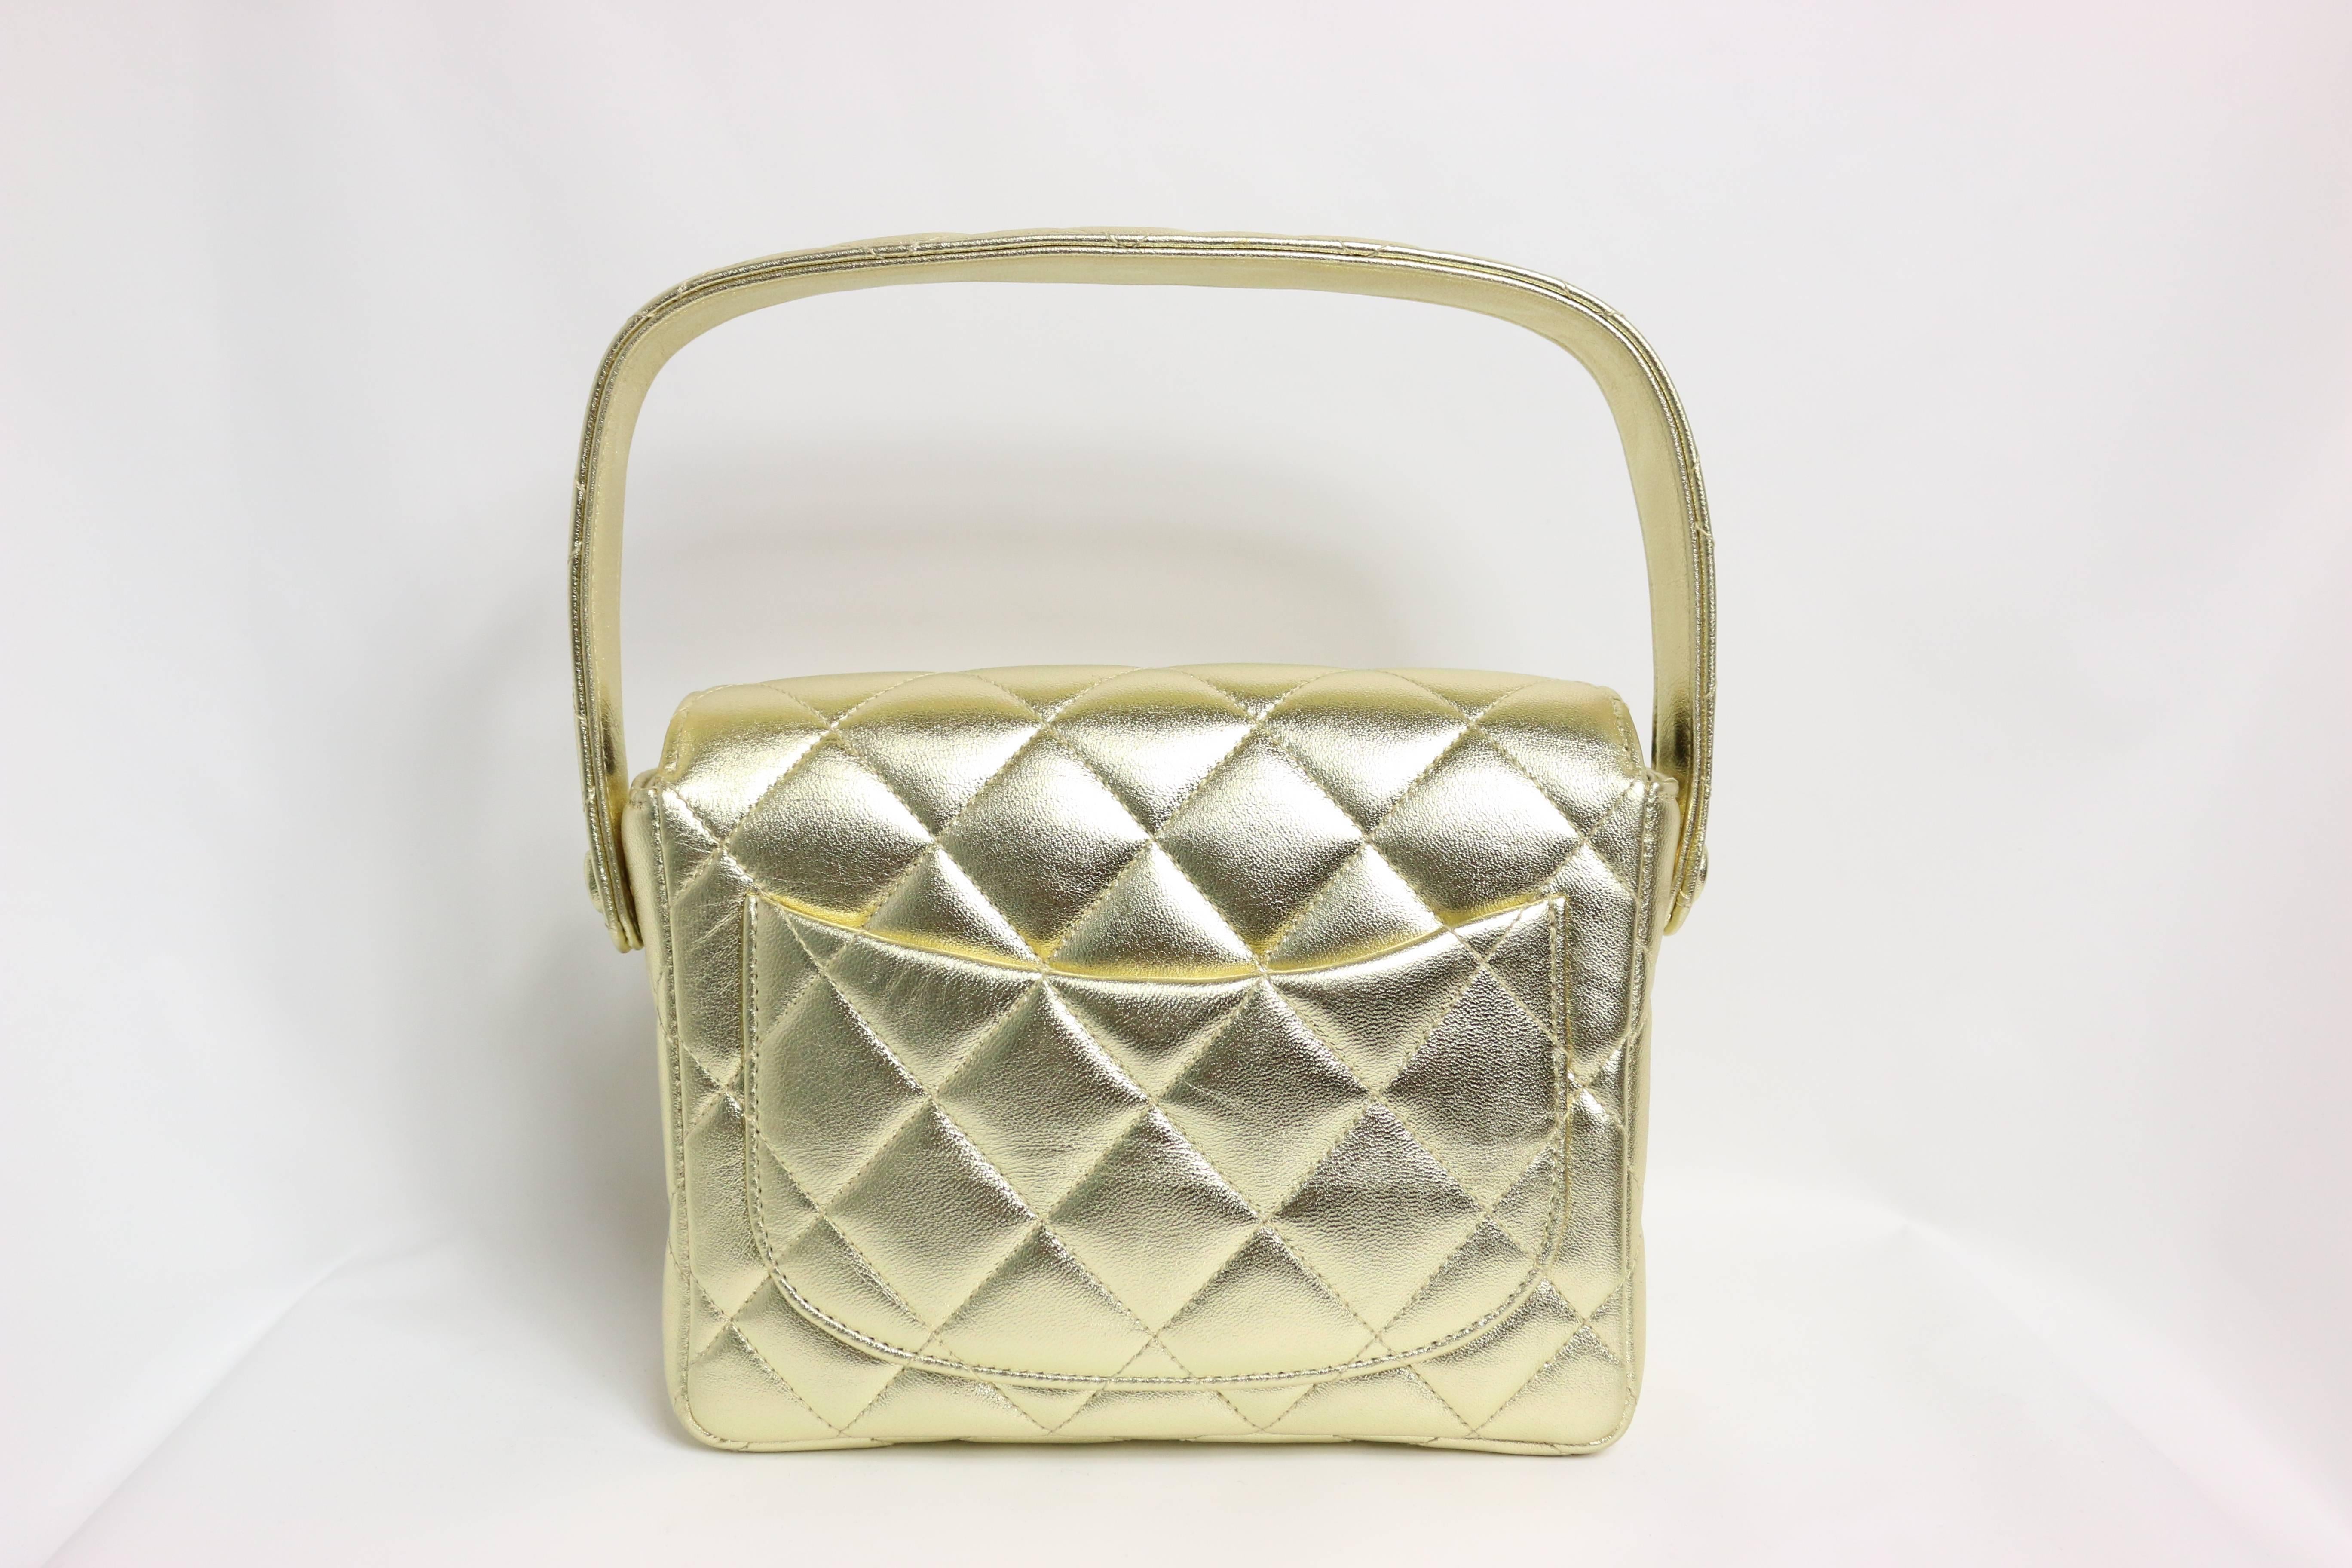 - Mini sac à main carré à rabat matelassé en cuir d'agneau métallisé doré de Chanel de la collection 1996 à 1997. 

- L'intérieur est doublé d'un cuir métallisé

- Hauteur : 5.51 pouces / 14 cm
  Largeur : 6,5 pouces / 16,5 cm
  Profondeur : 5 cm
 